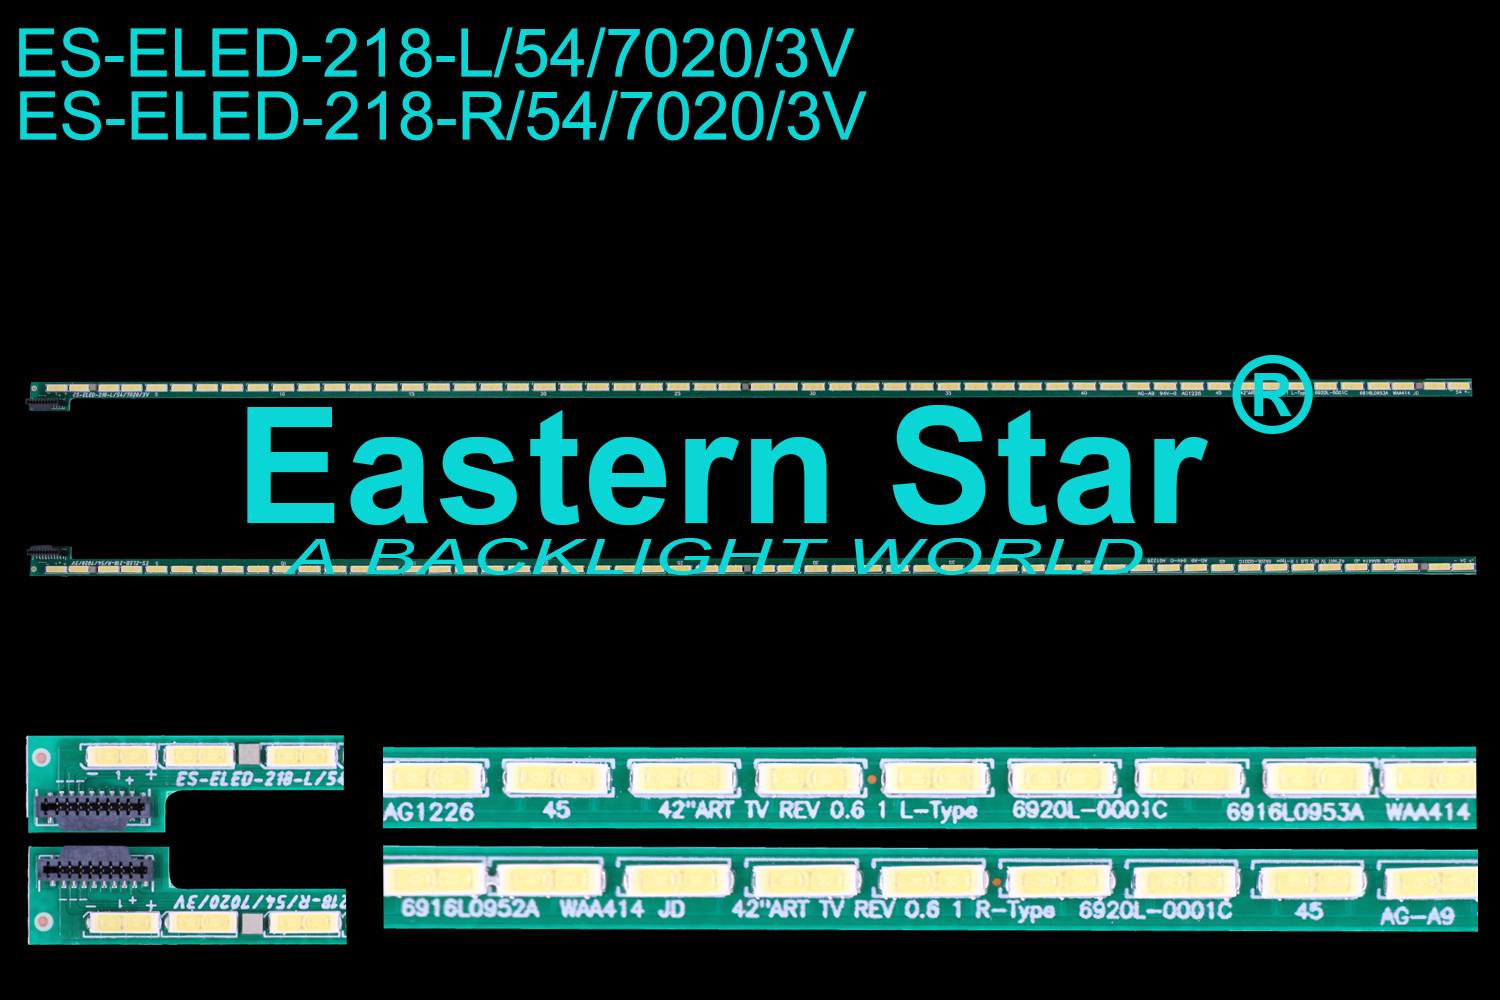 ES-ELED-218 ELED/EDGE TV backlight use for Lg 42'' 54LEDs 42'' ART TV REV 0.6 1 R/L-Type 6920l-0001C LED STRIPS(2)